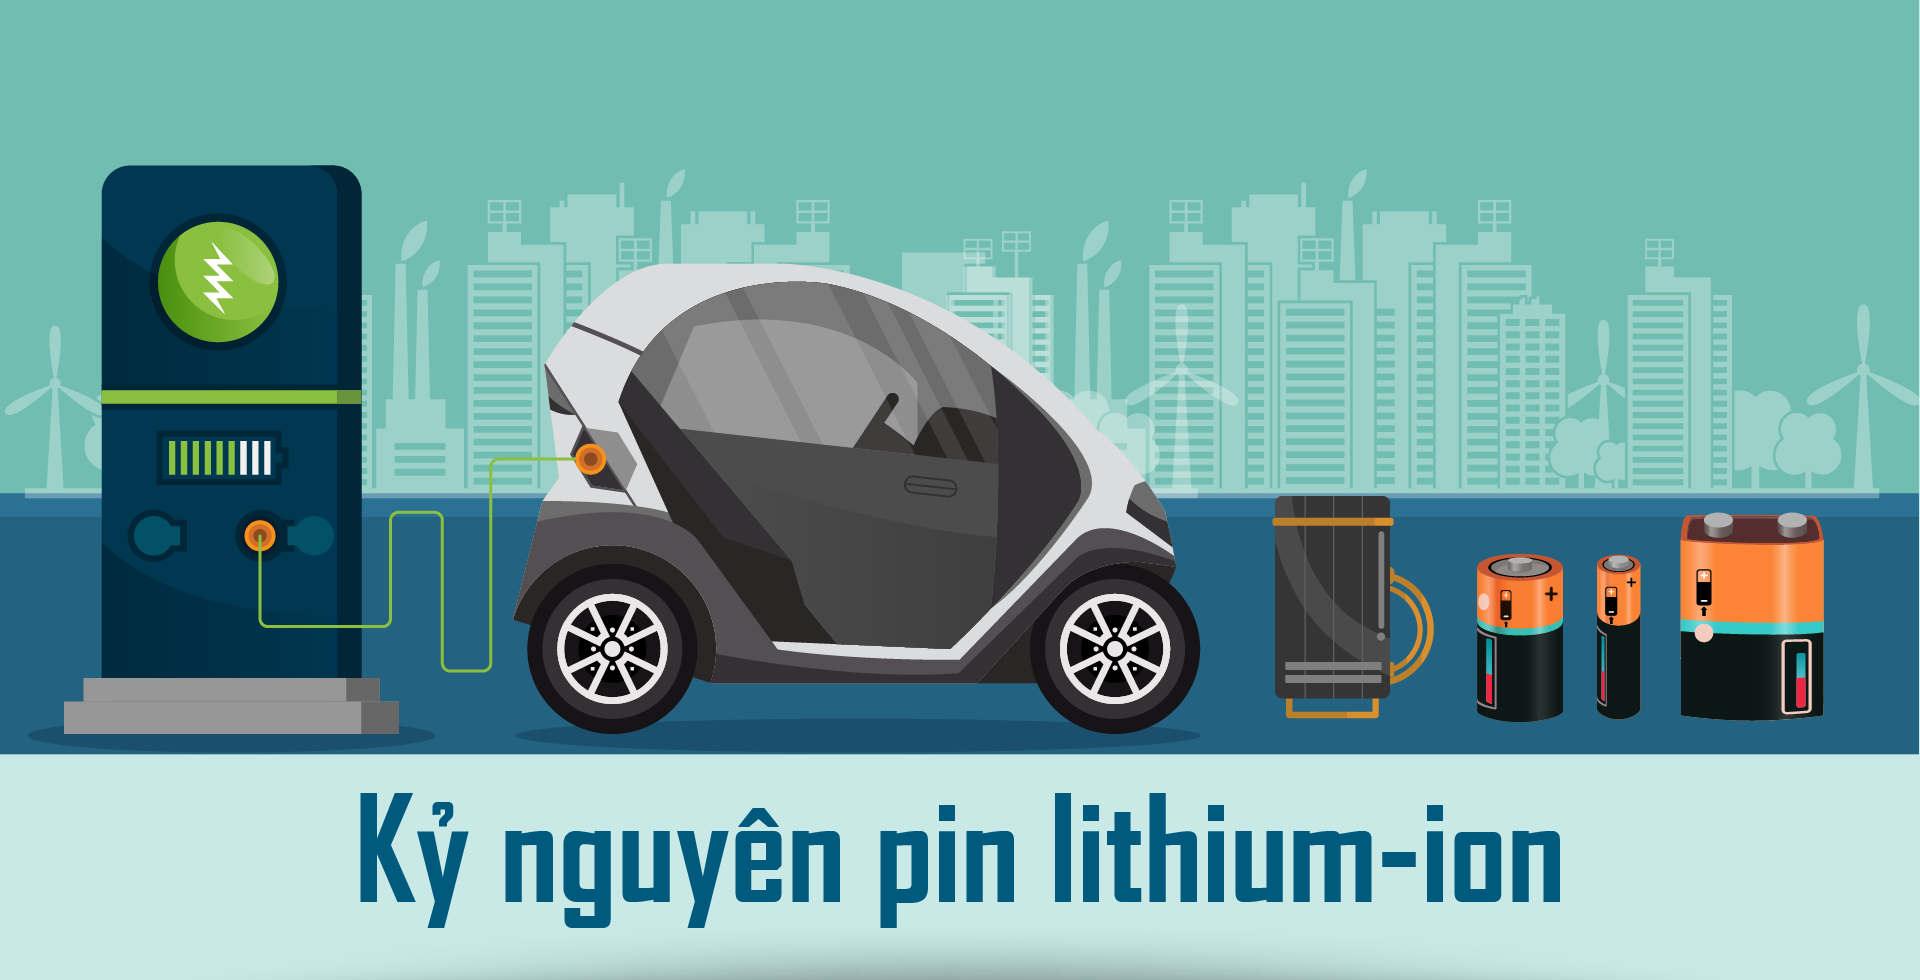 Kỷ nguyên pin lithium-ion - Ảnh 1